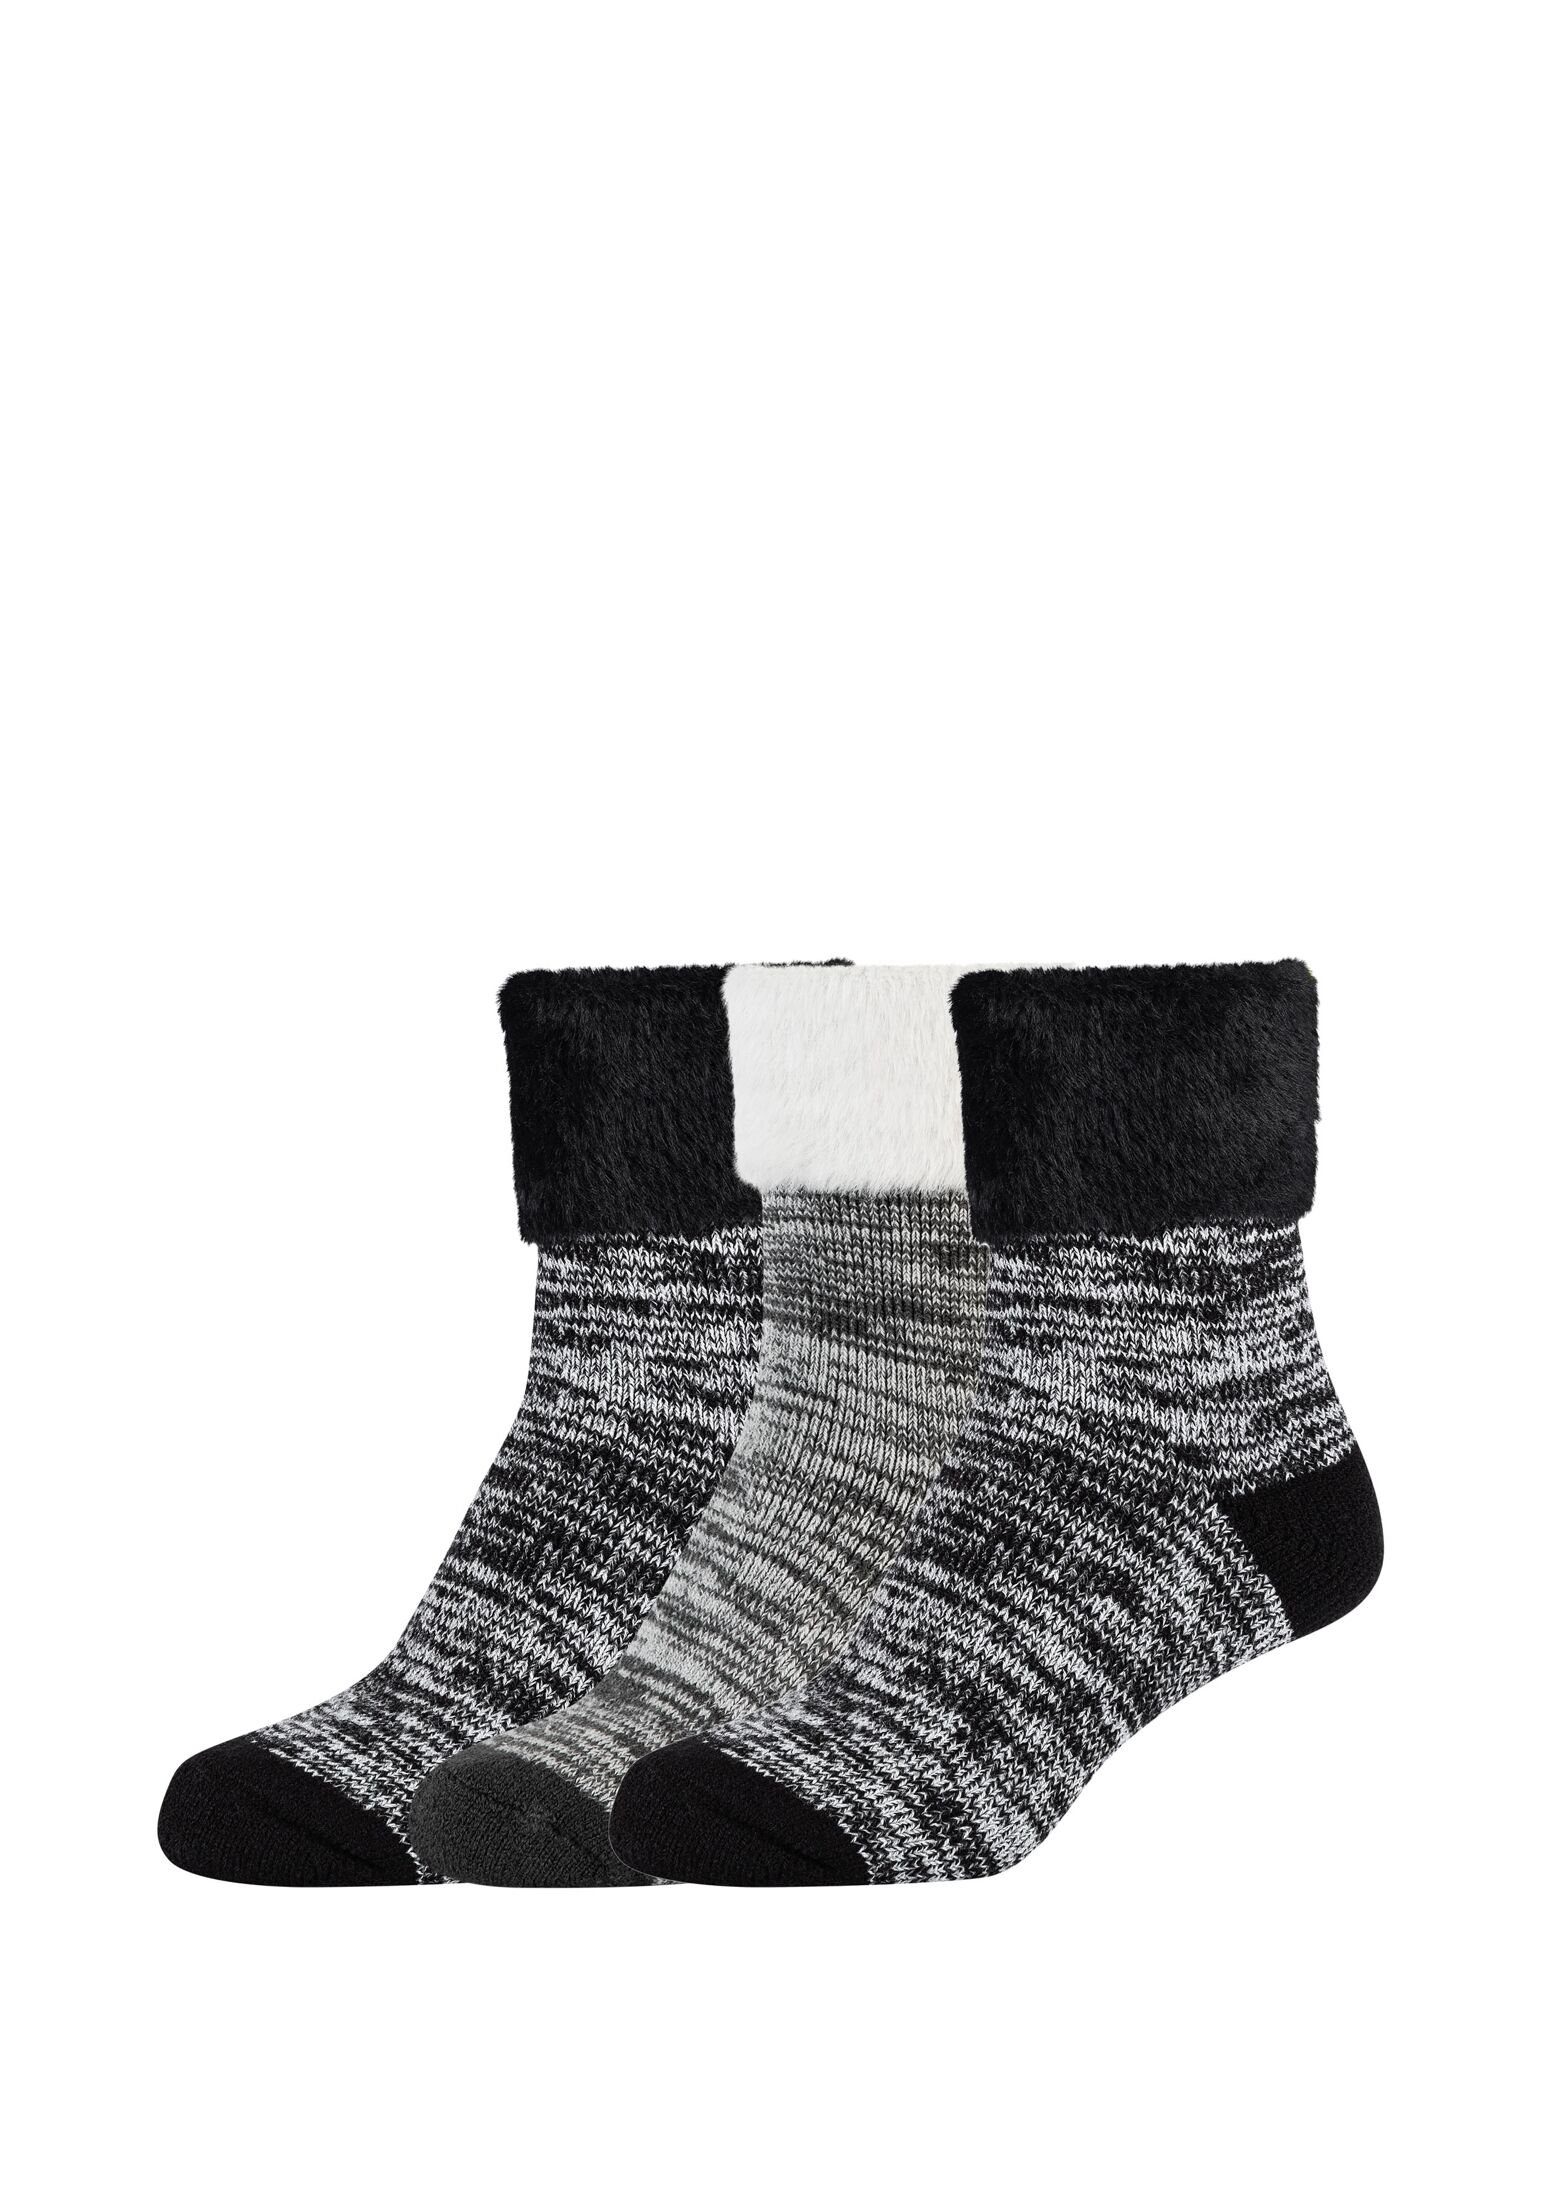 Camano Socken Socken 3er Pack black